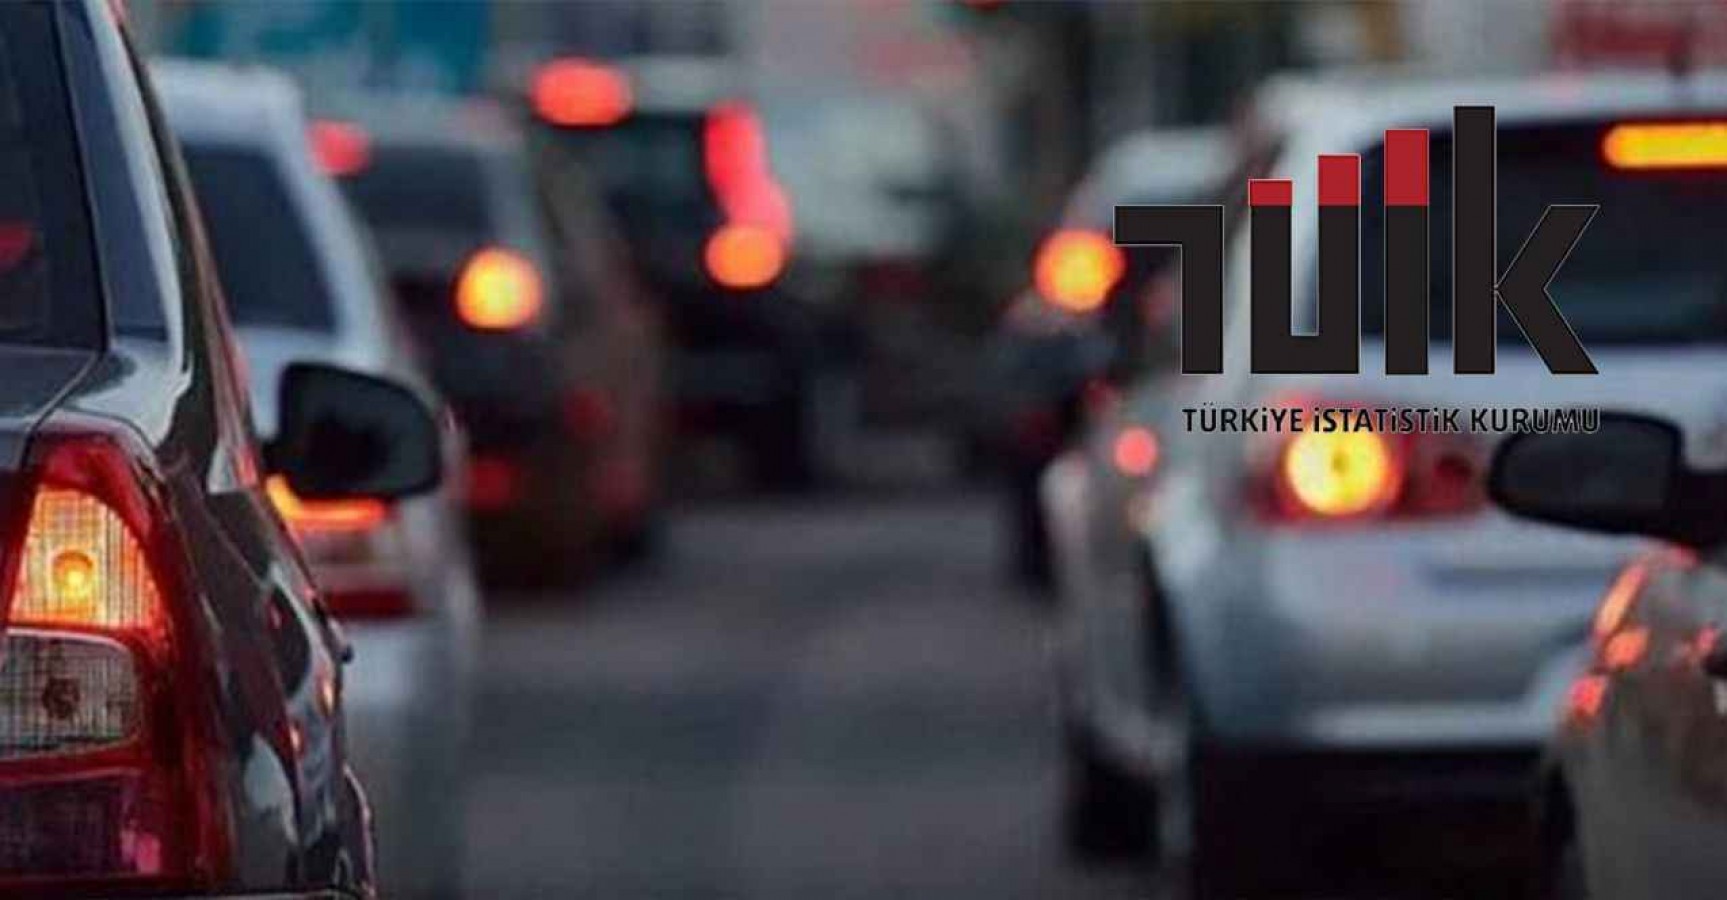 Urfa'da trafiğe kayıtlı araç sayısı açıklandı